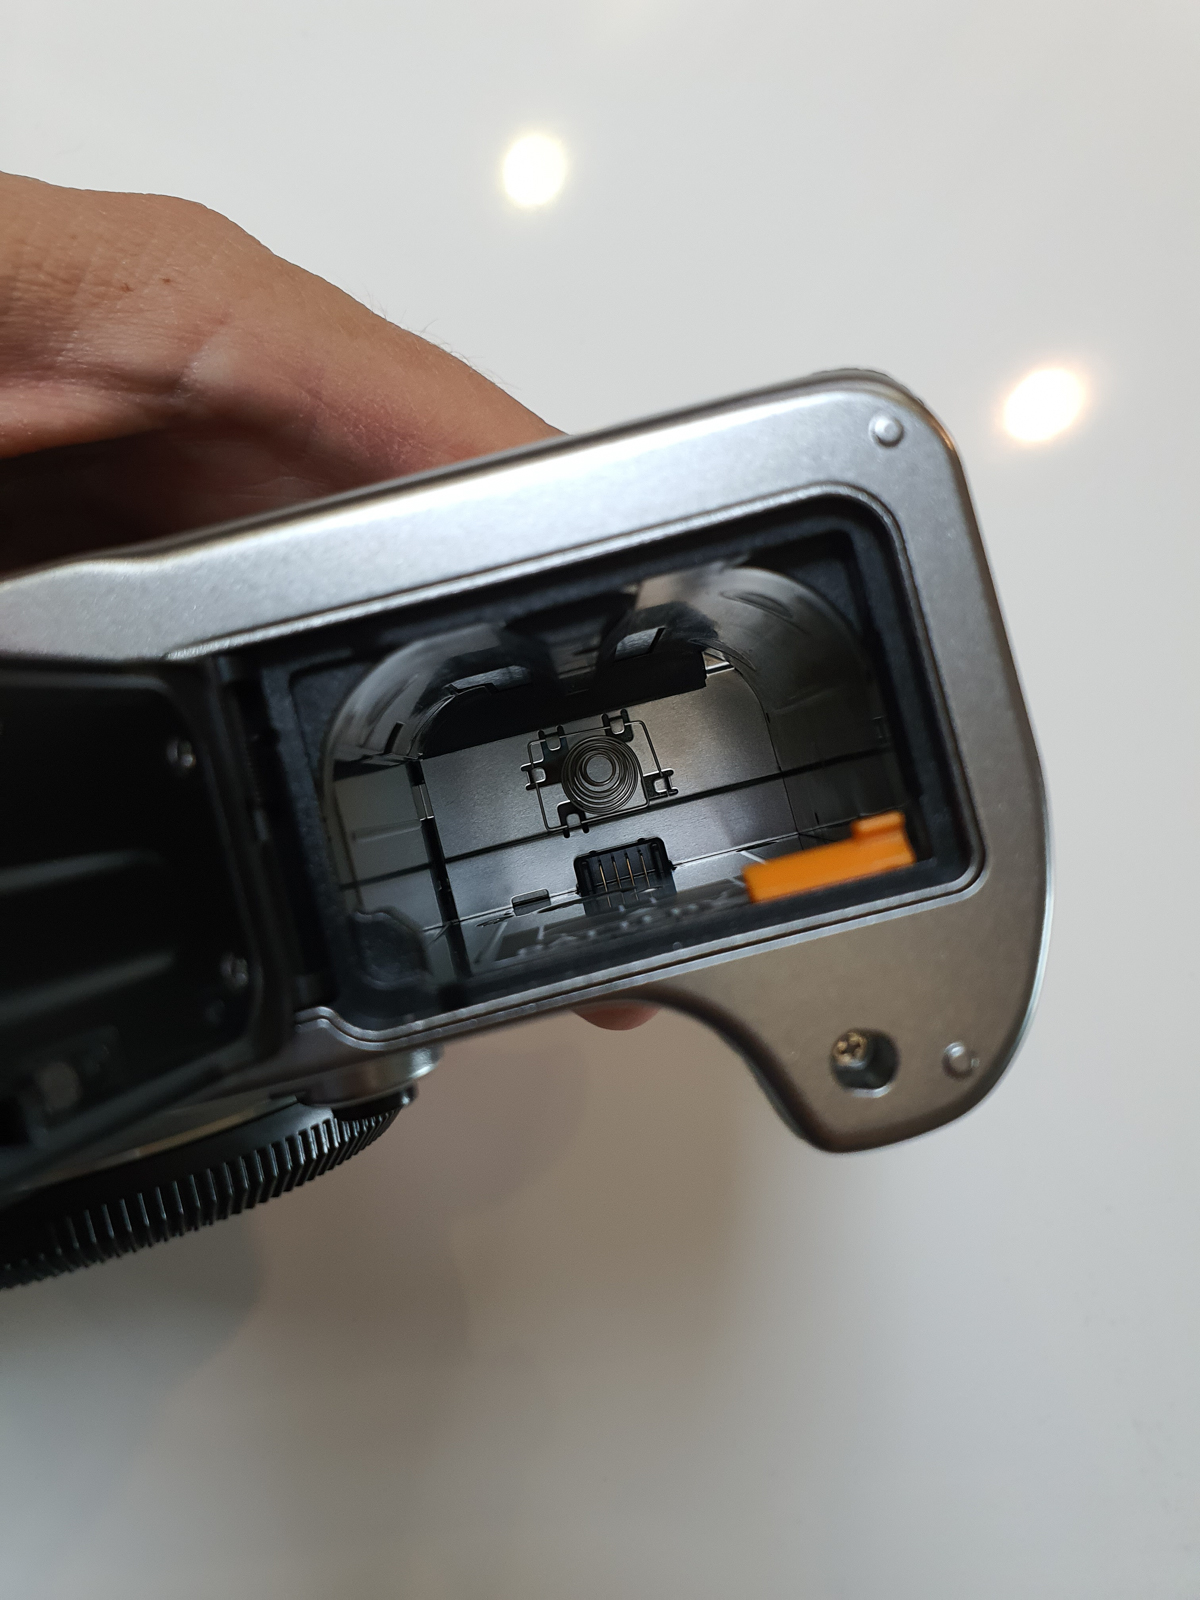 Fujifilm X-T4: Erster Eindruck und Unboxing